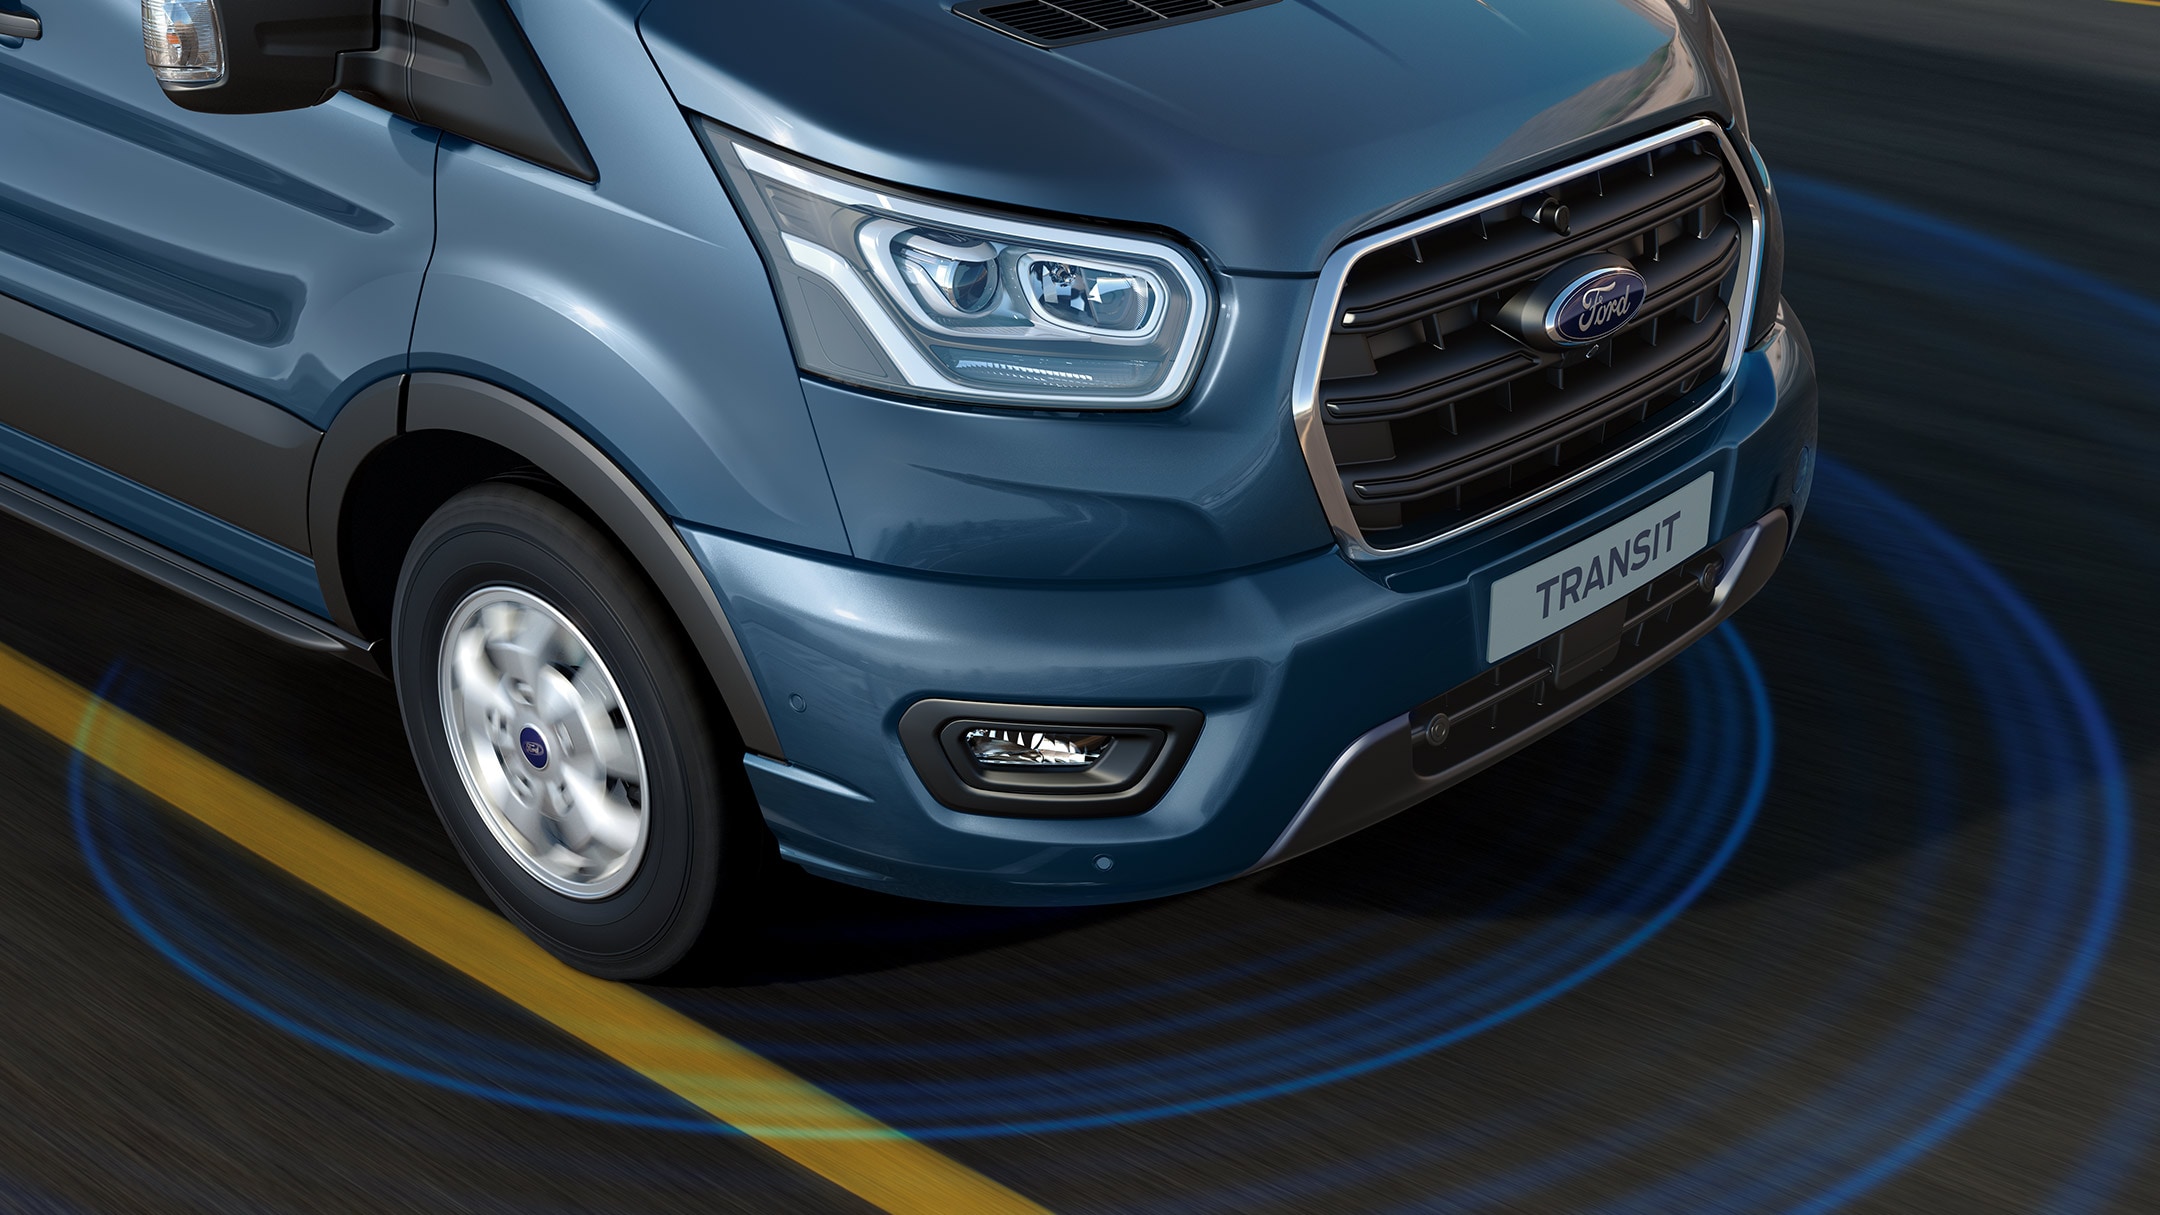 Ford Transit couleur bleue, vue de face aux trois quarts, illustration de l’alerte de franchissement de ligne